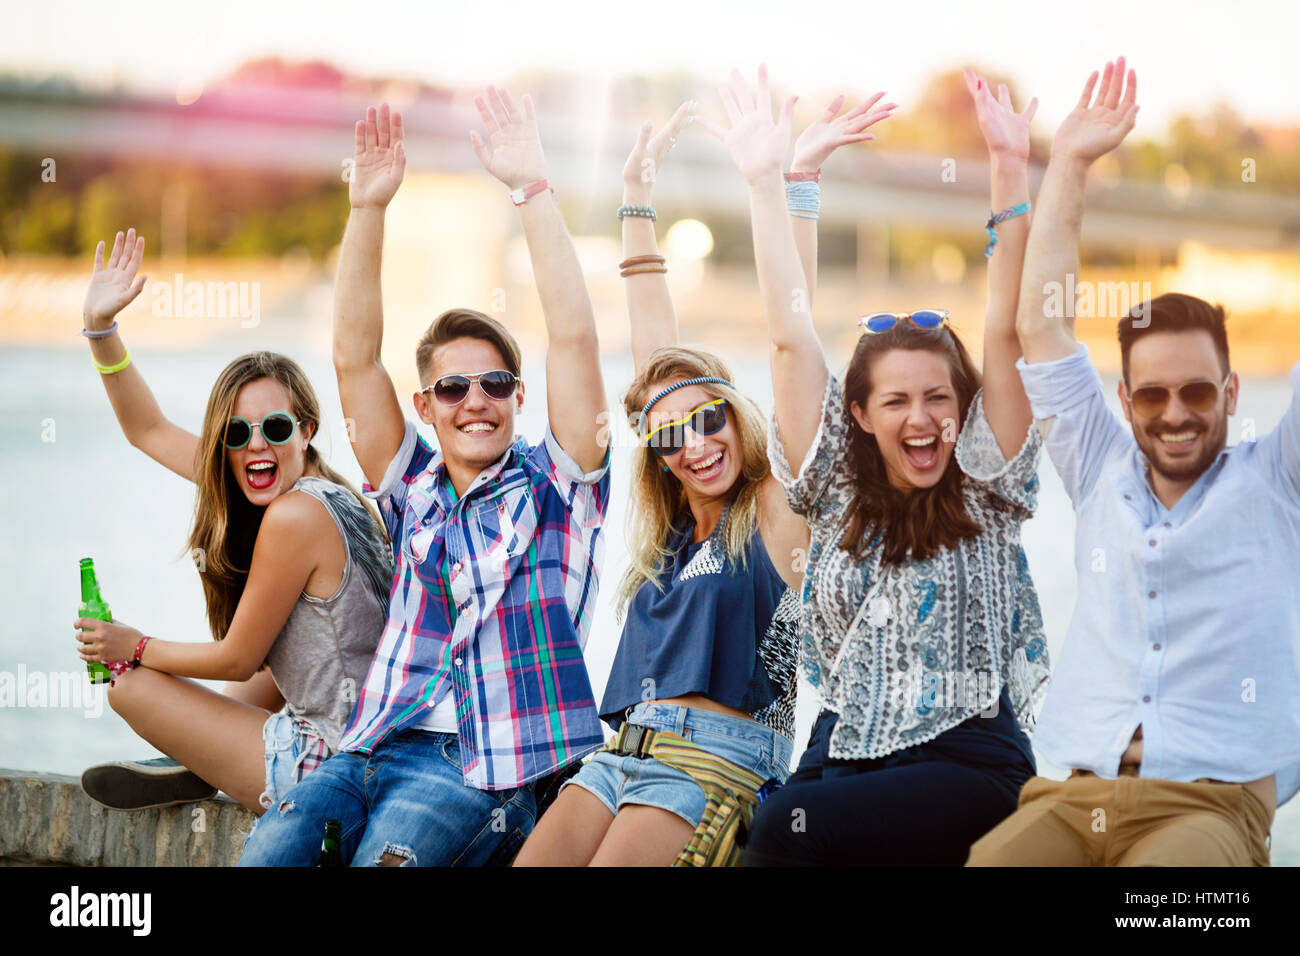 Grupo de jóvenes felices a divertirse y disfrutar de la fiesta en verano Foto de stock